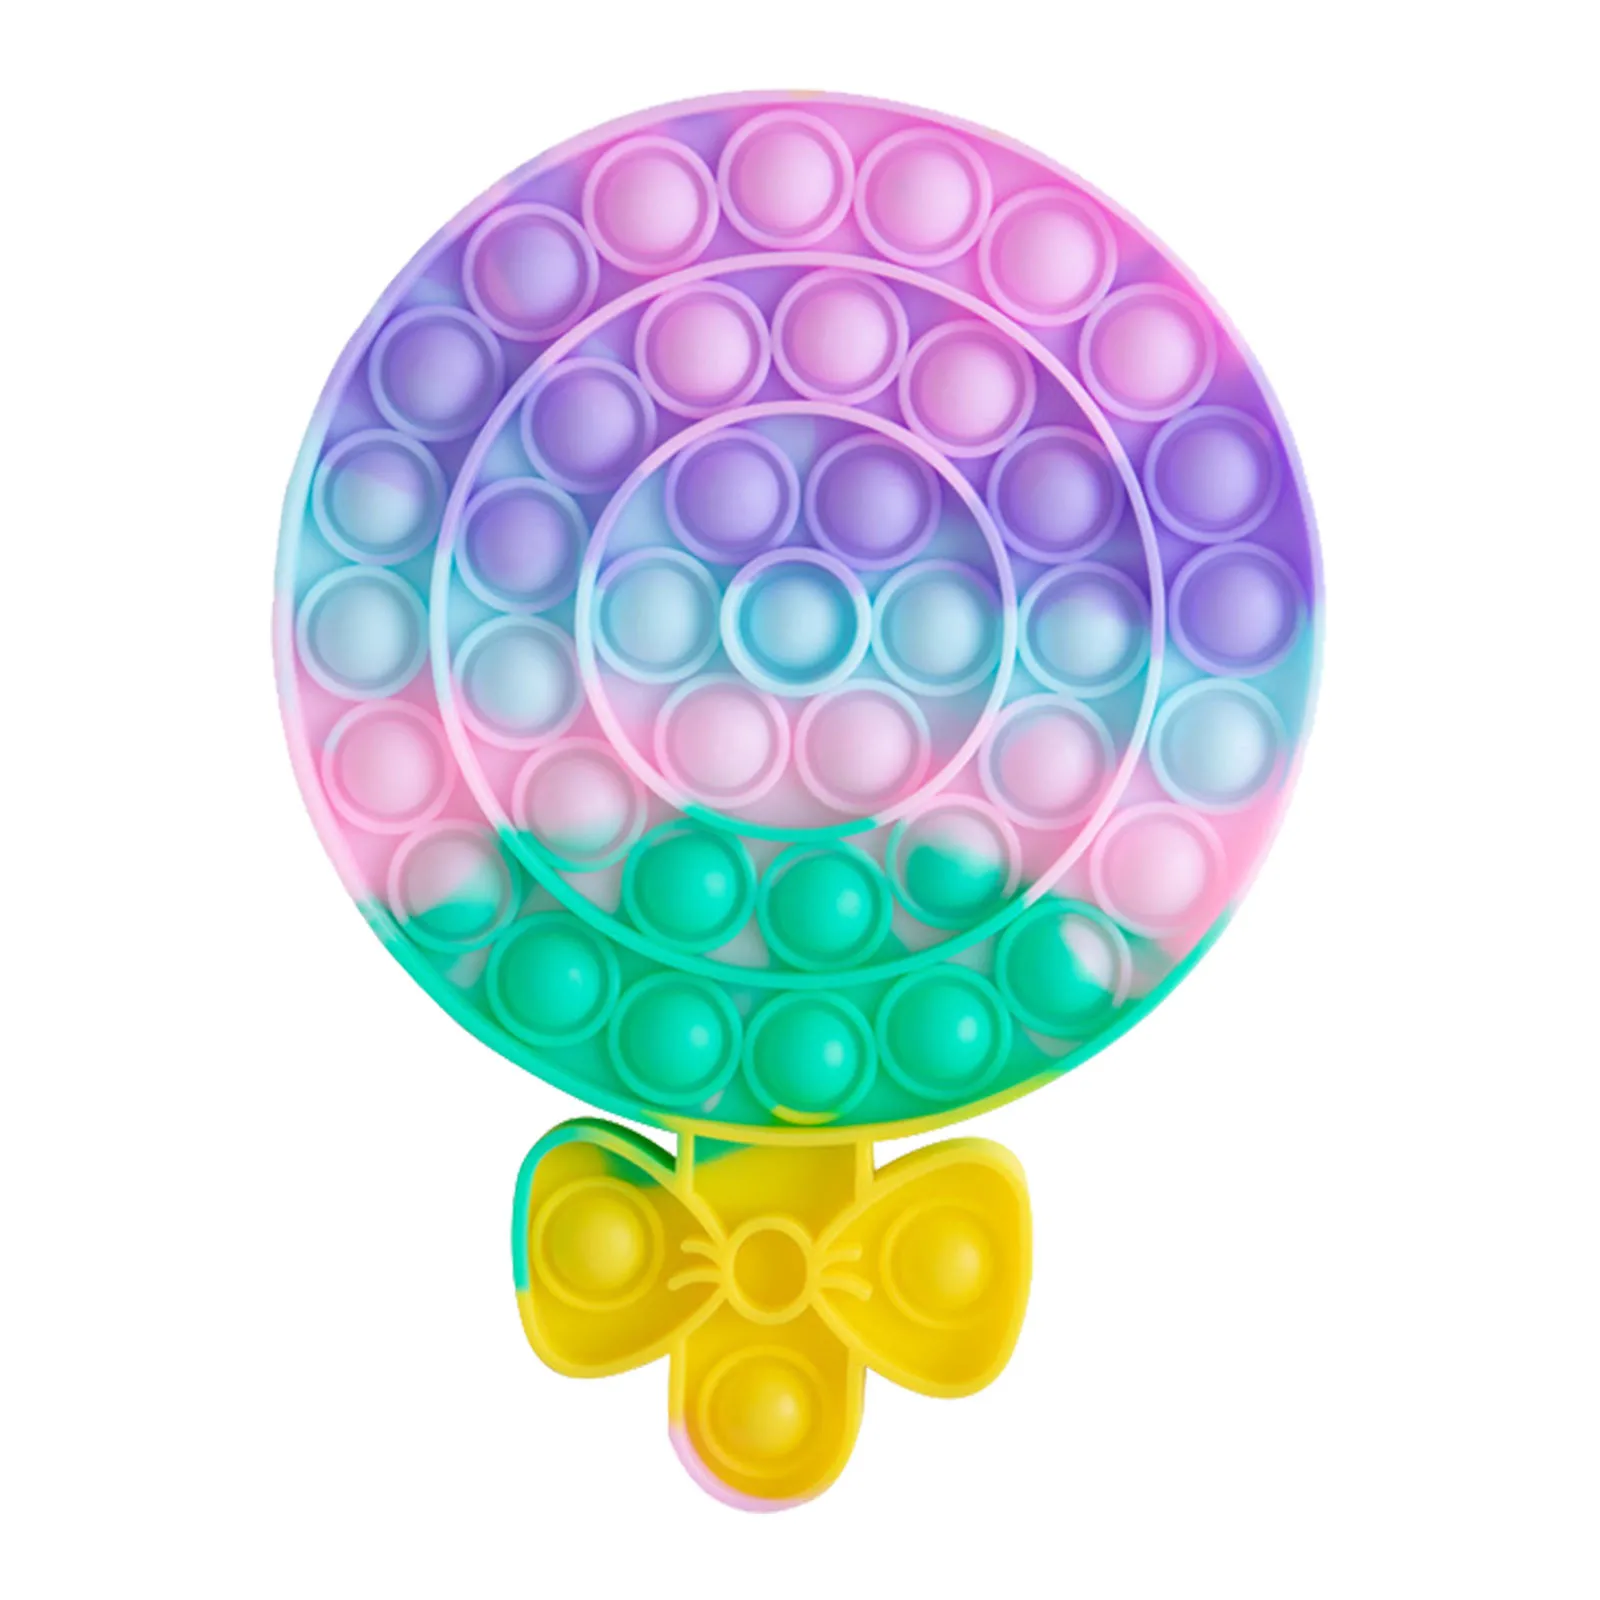 

Rainbow Push Bubble Fidget Sensory Toy Autism Special Needs Relief Toy Relief Funny Anti-stress Hand Toys zabawki dla dzieci